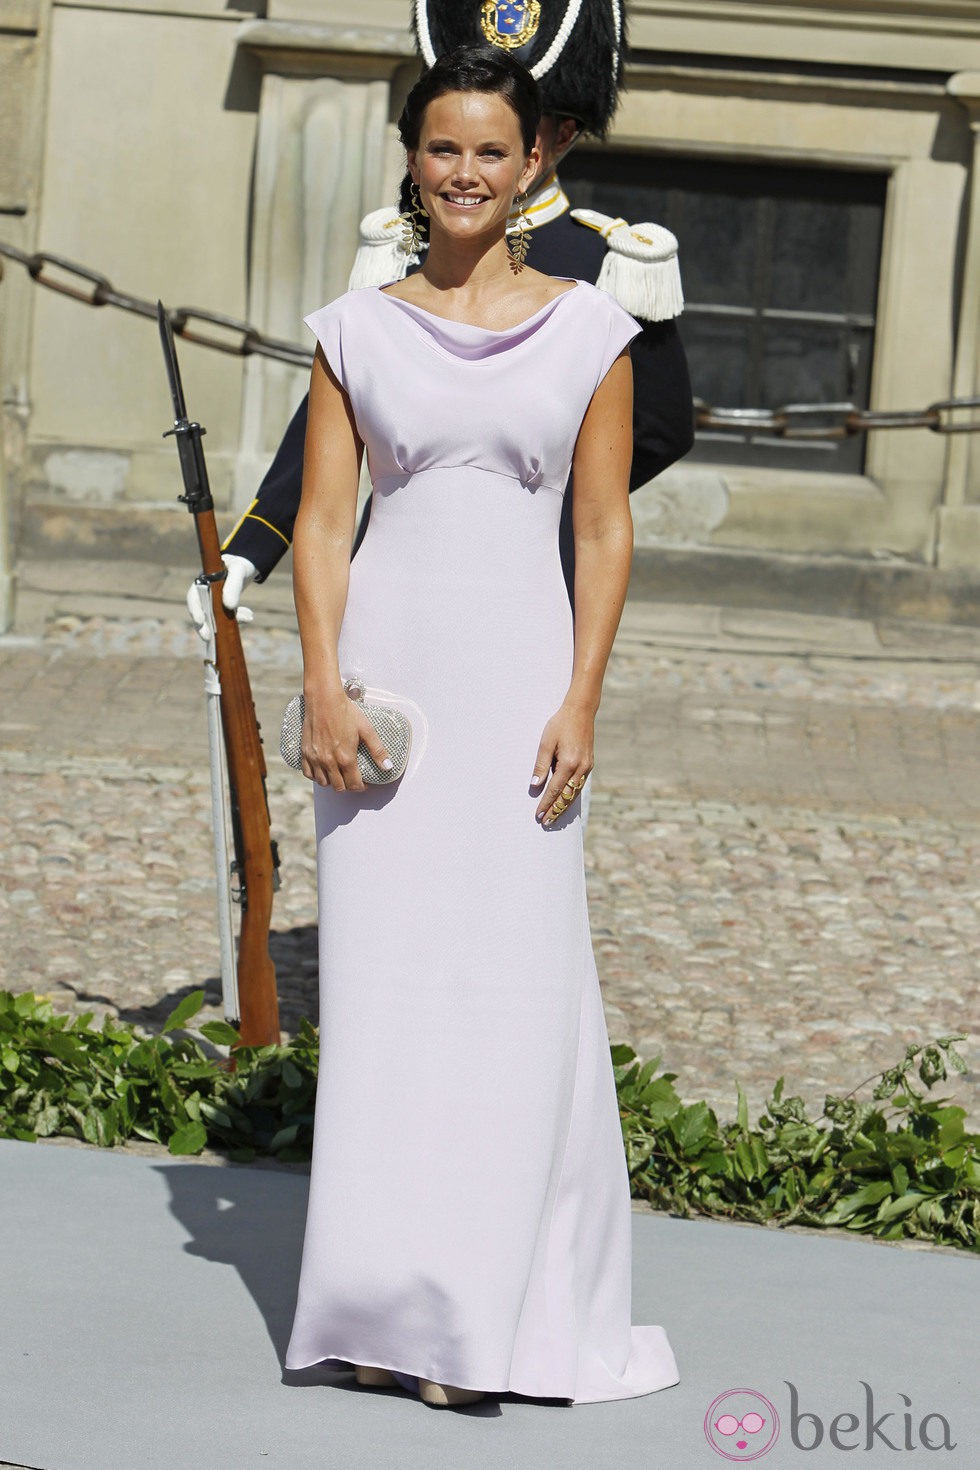 Sofia Hellqvist en la boda de Magdalena de Suecia y Chris O'Neill